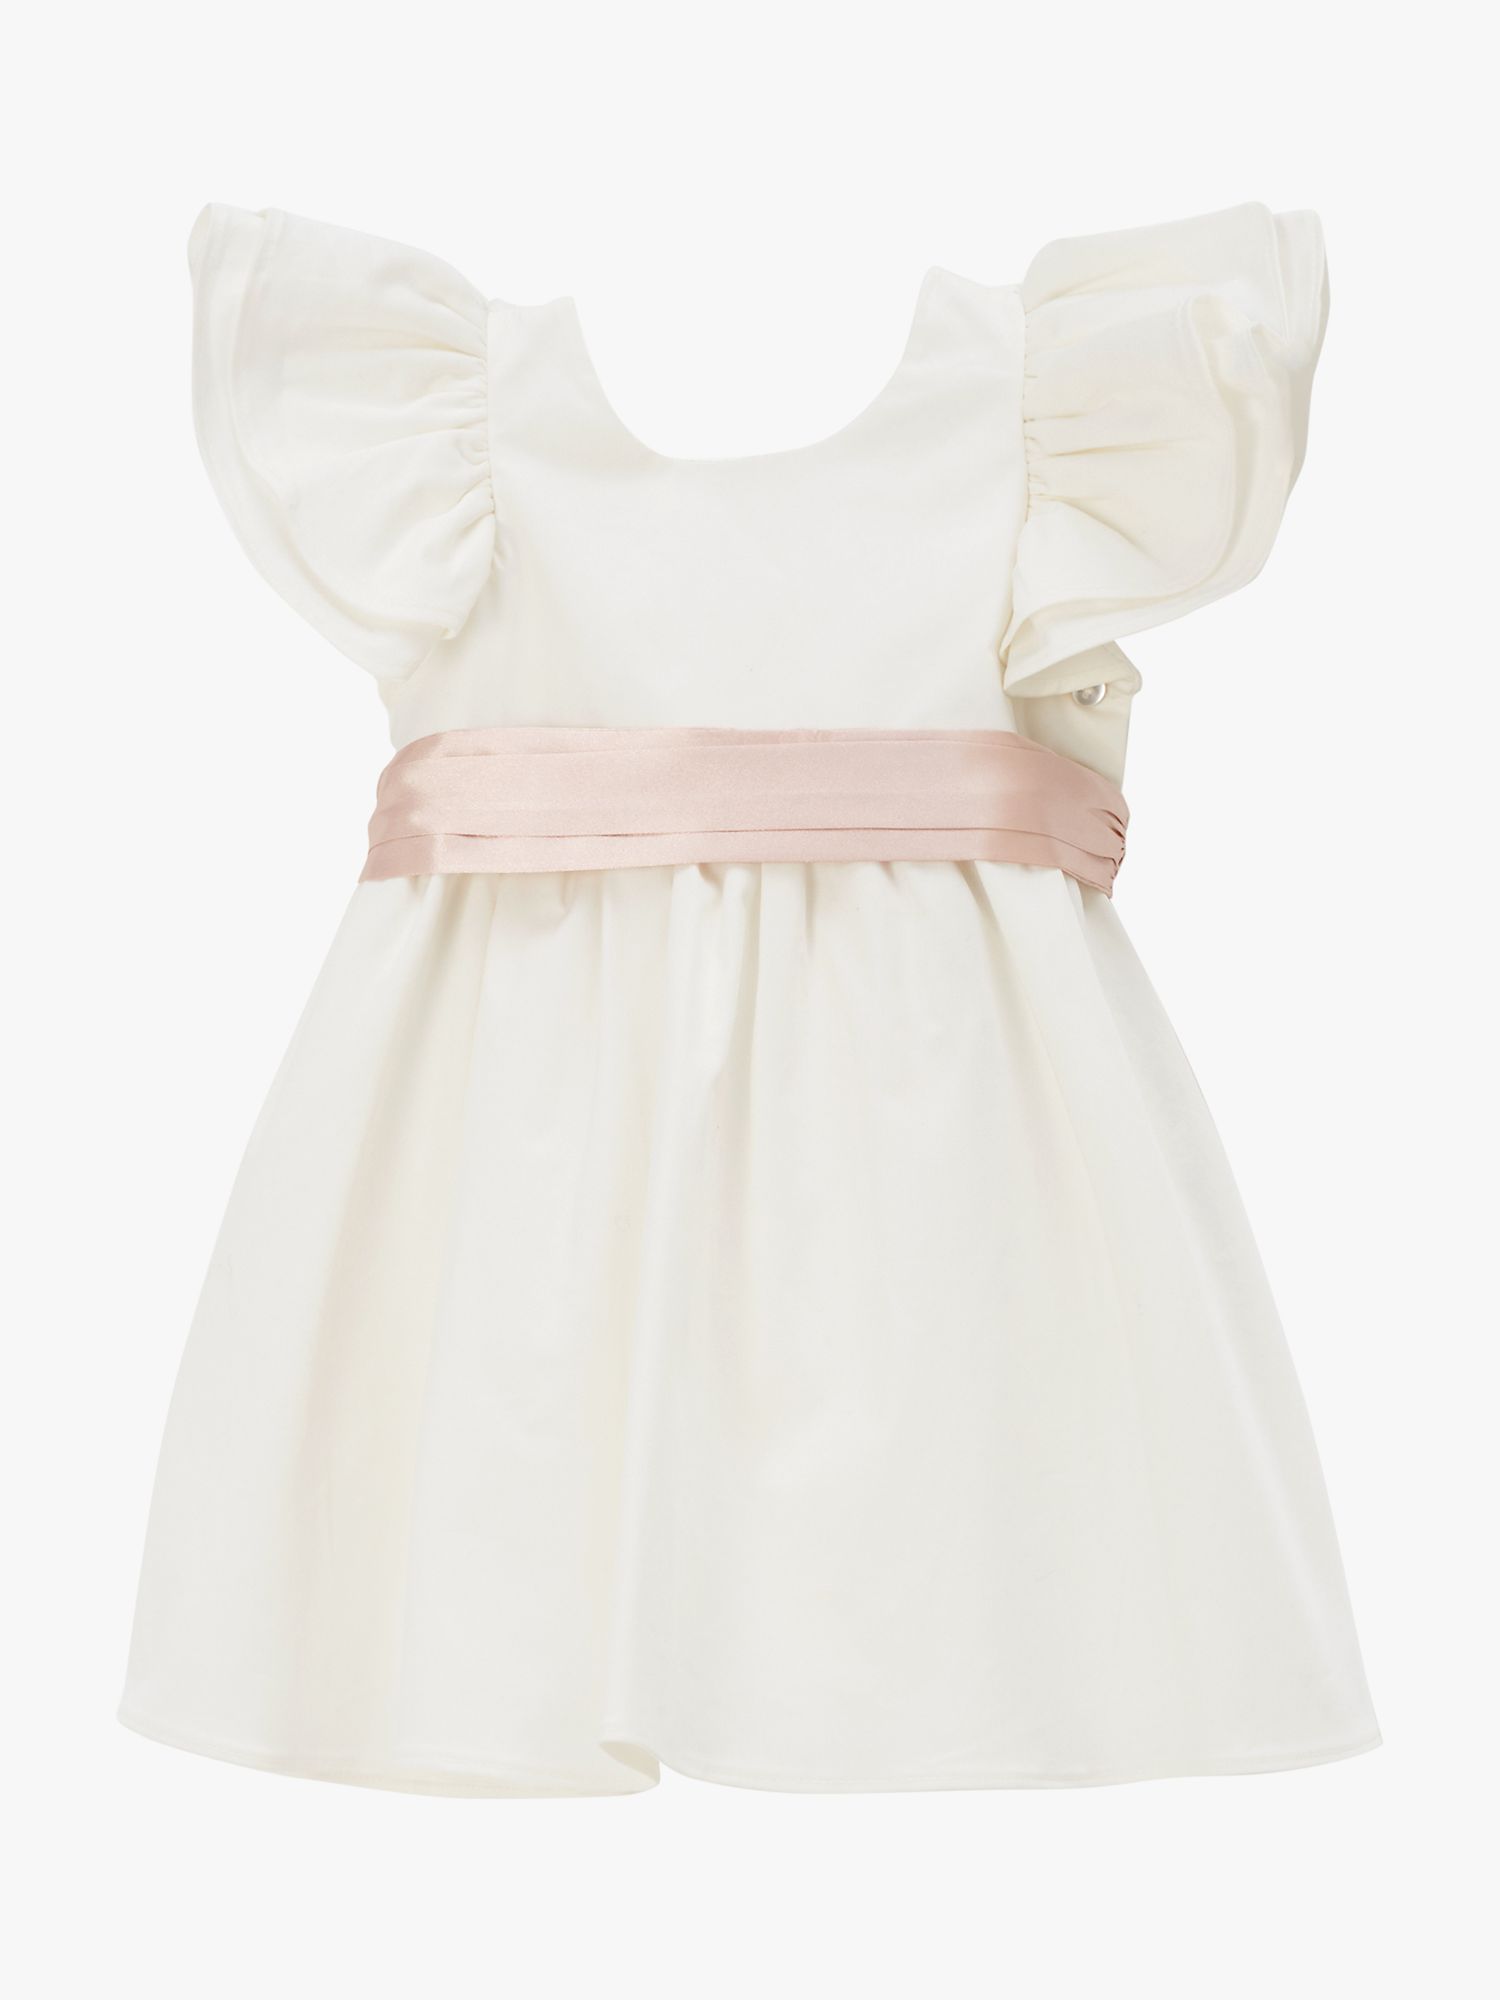 Angel & Rocket Baby Sateen Sash Dress, Cream, 3-6 months